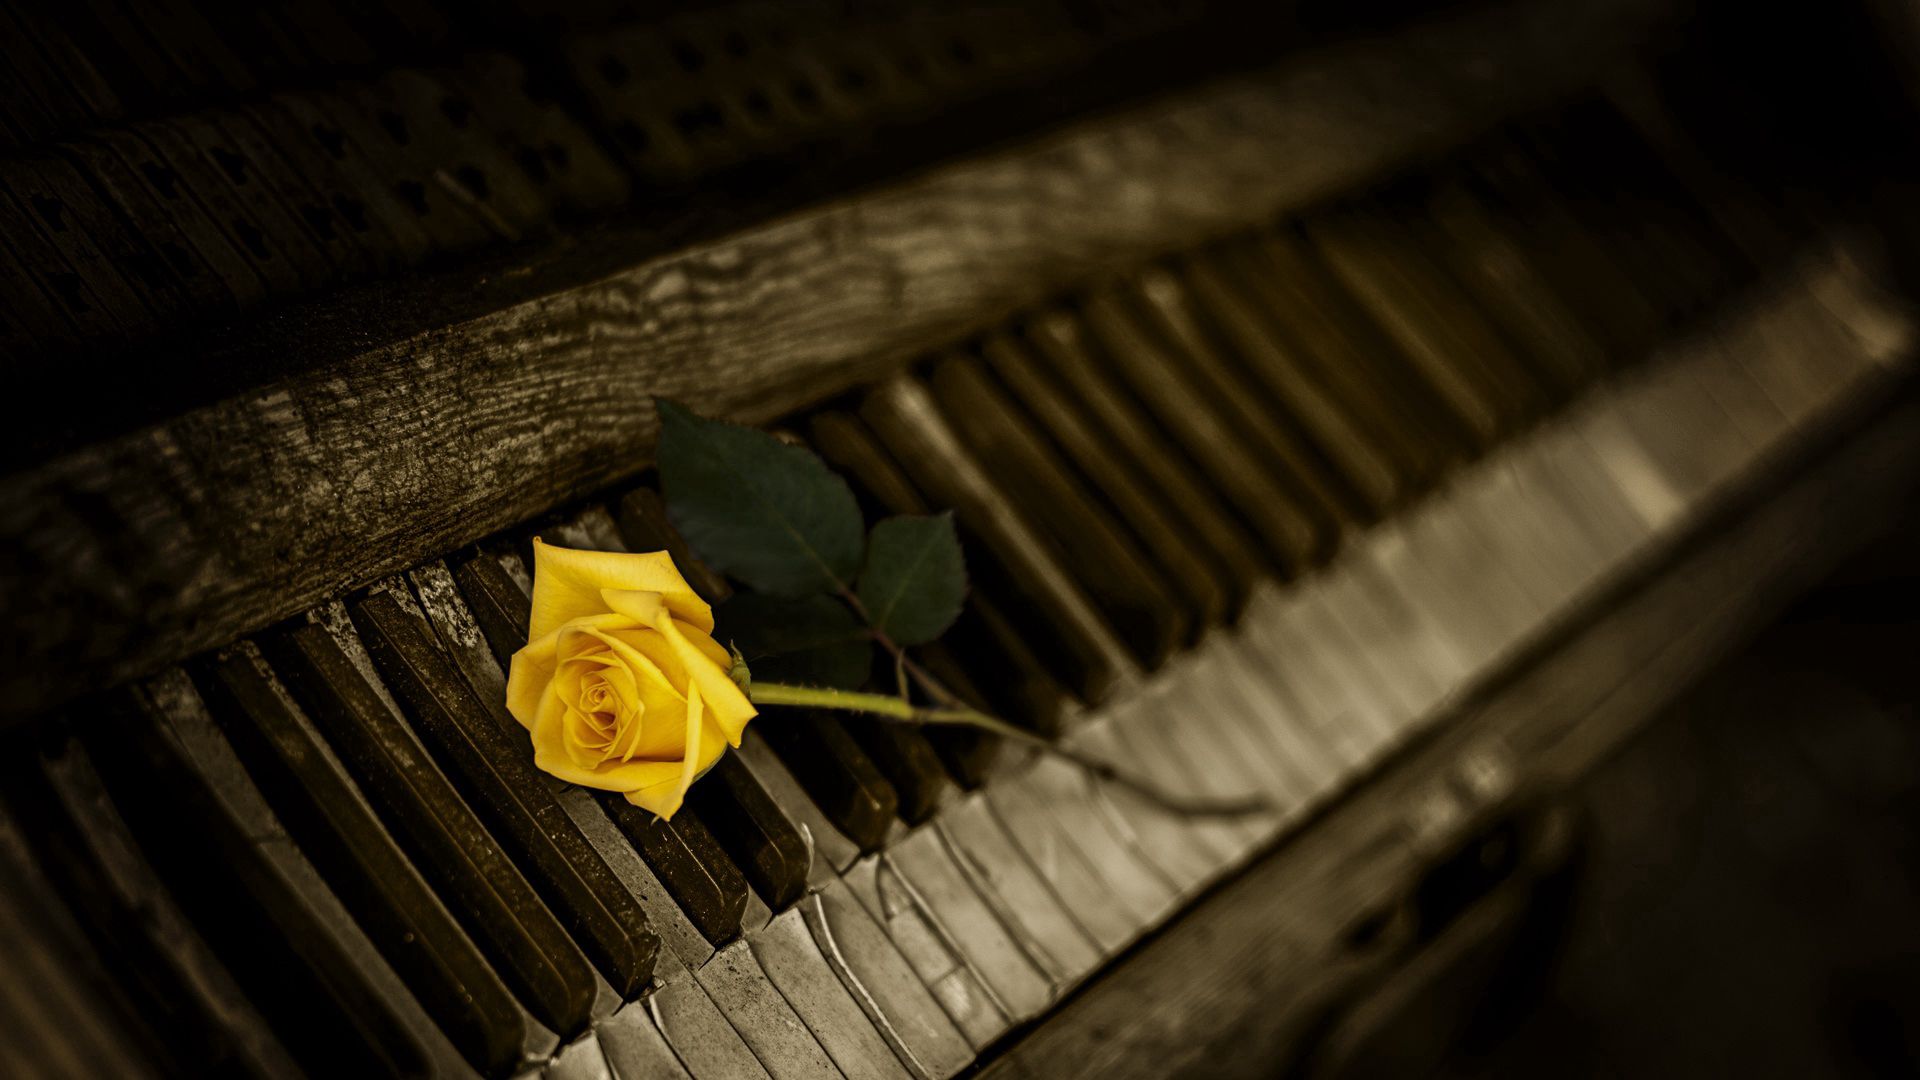 piano, flowers, rose flower, rose, keys 5K